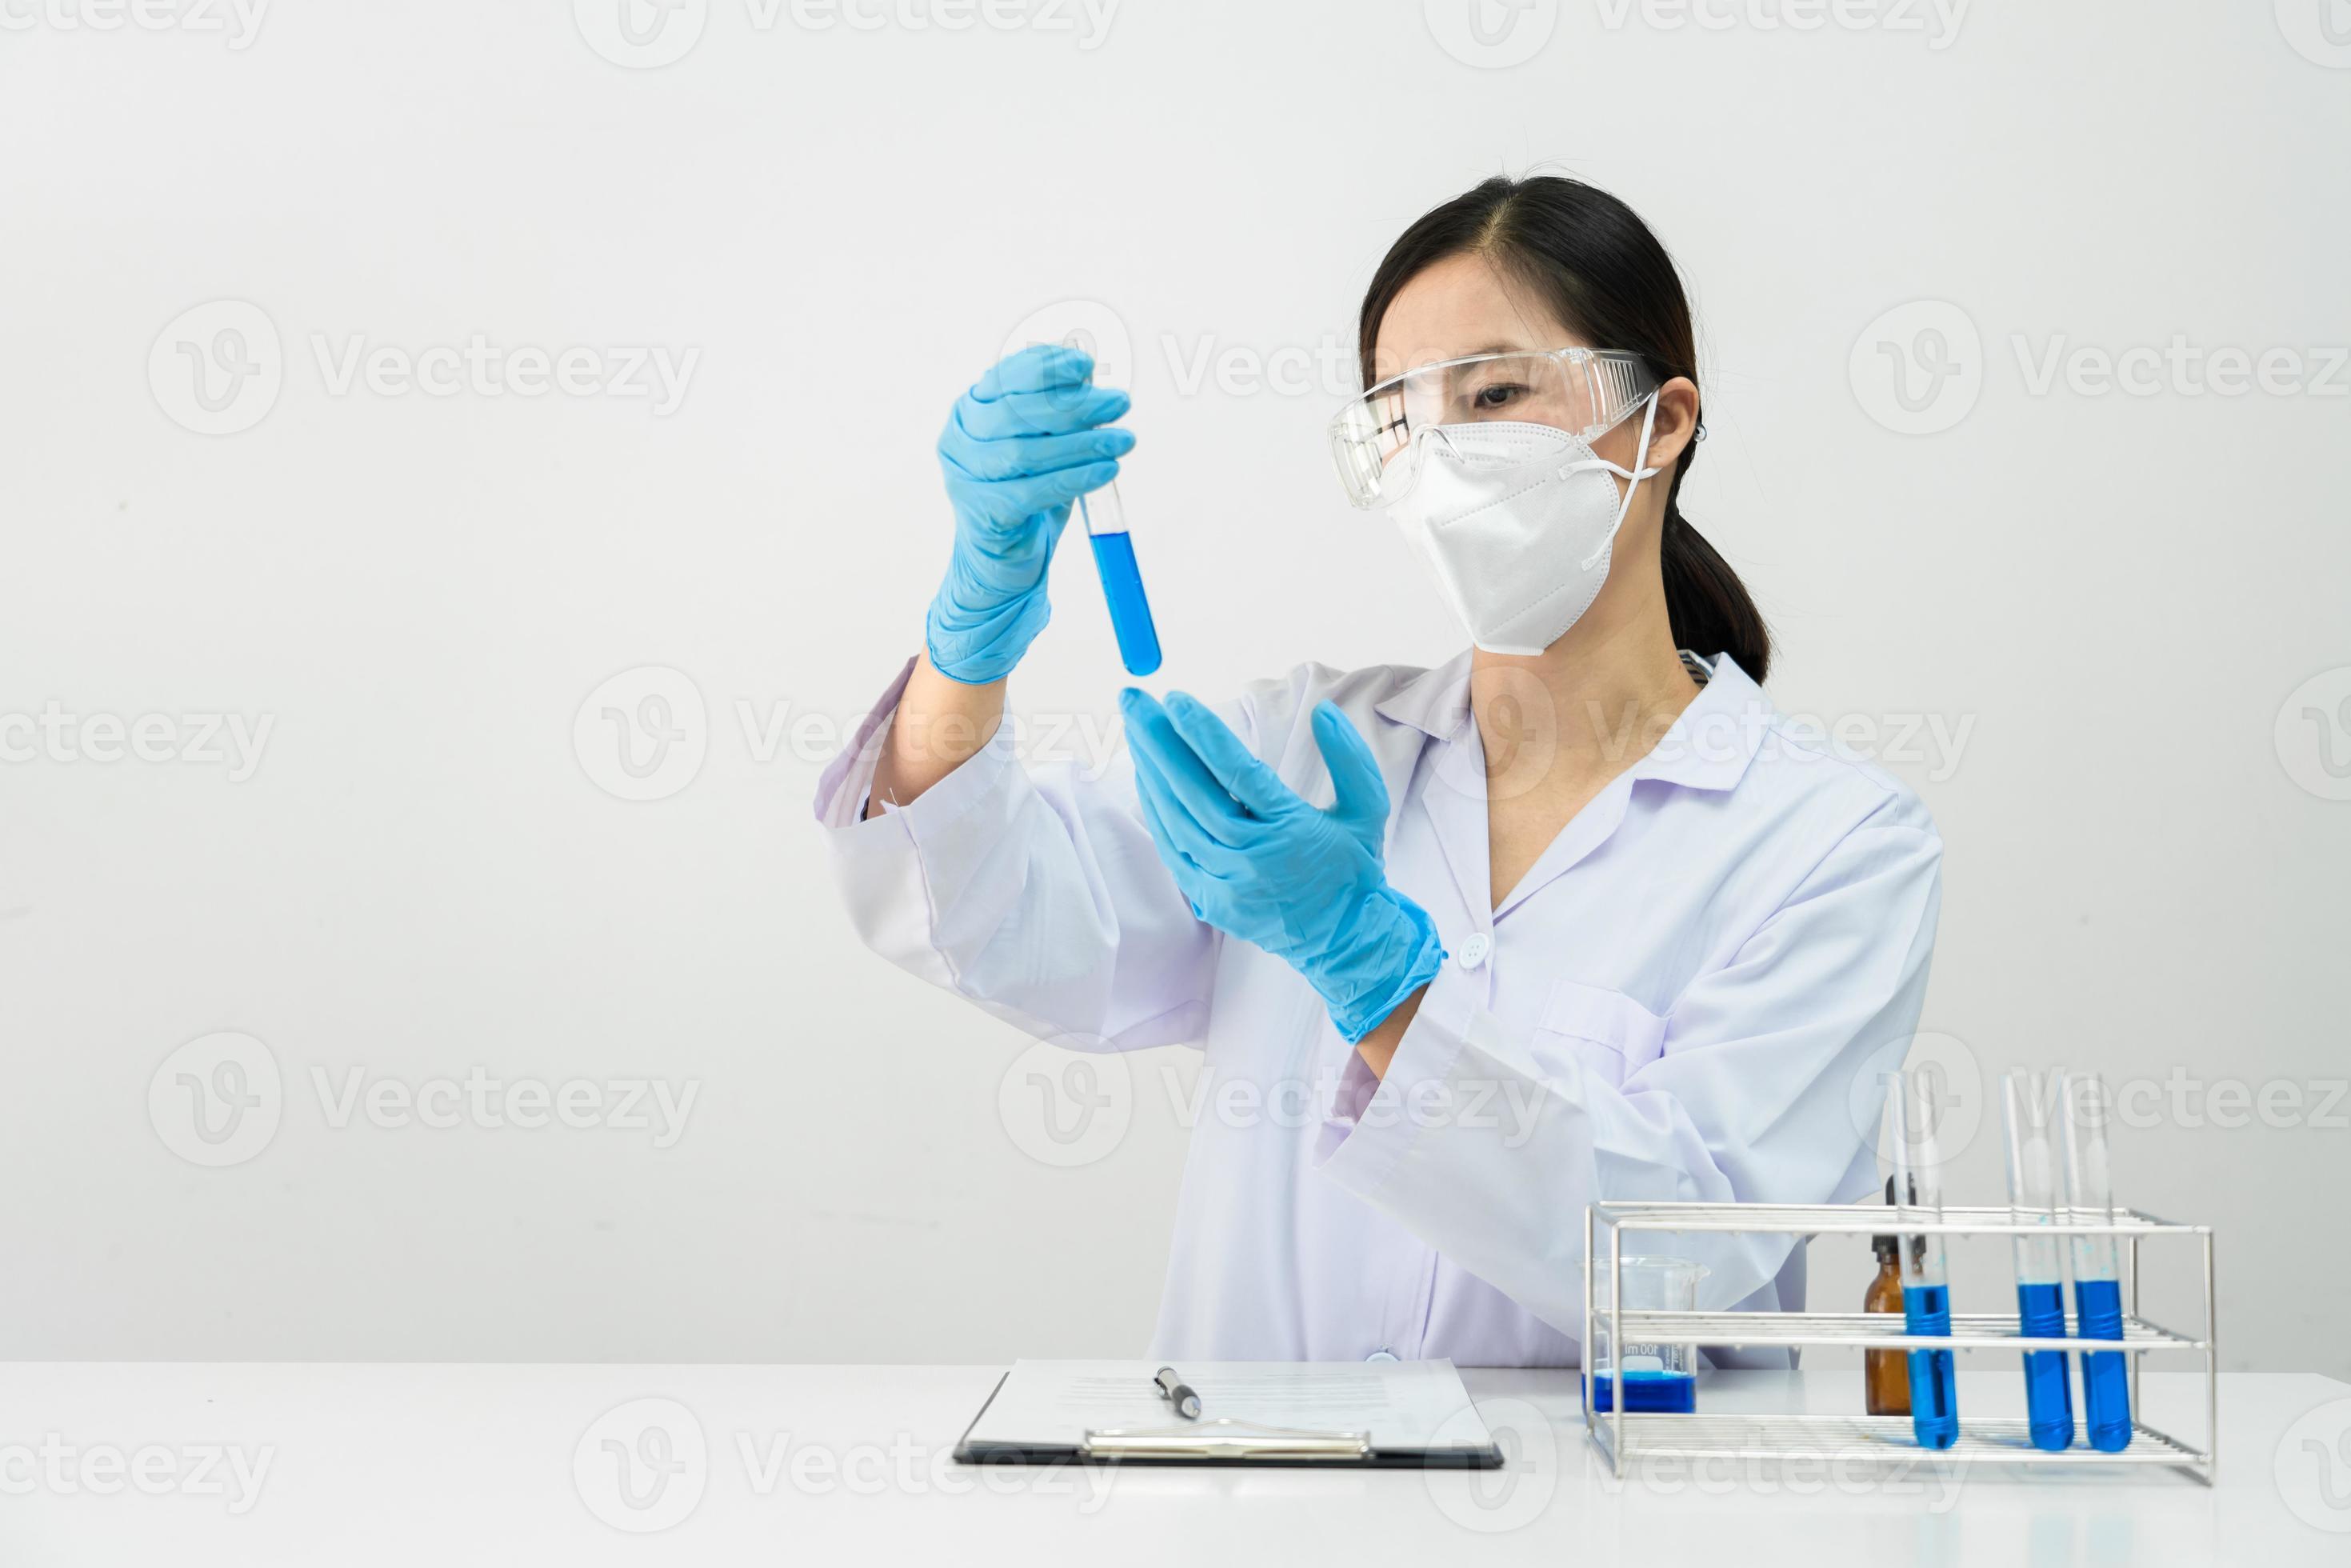 wissenschaftler forschen im labor in weißem laborkittel, handschuhe analysieren, betrachten reagenzglasproben, biotechnologiekonzept foto